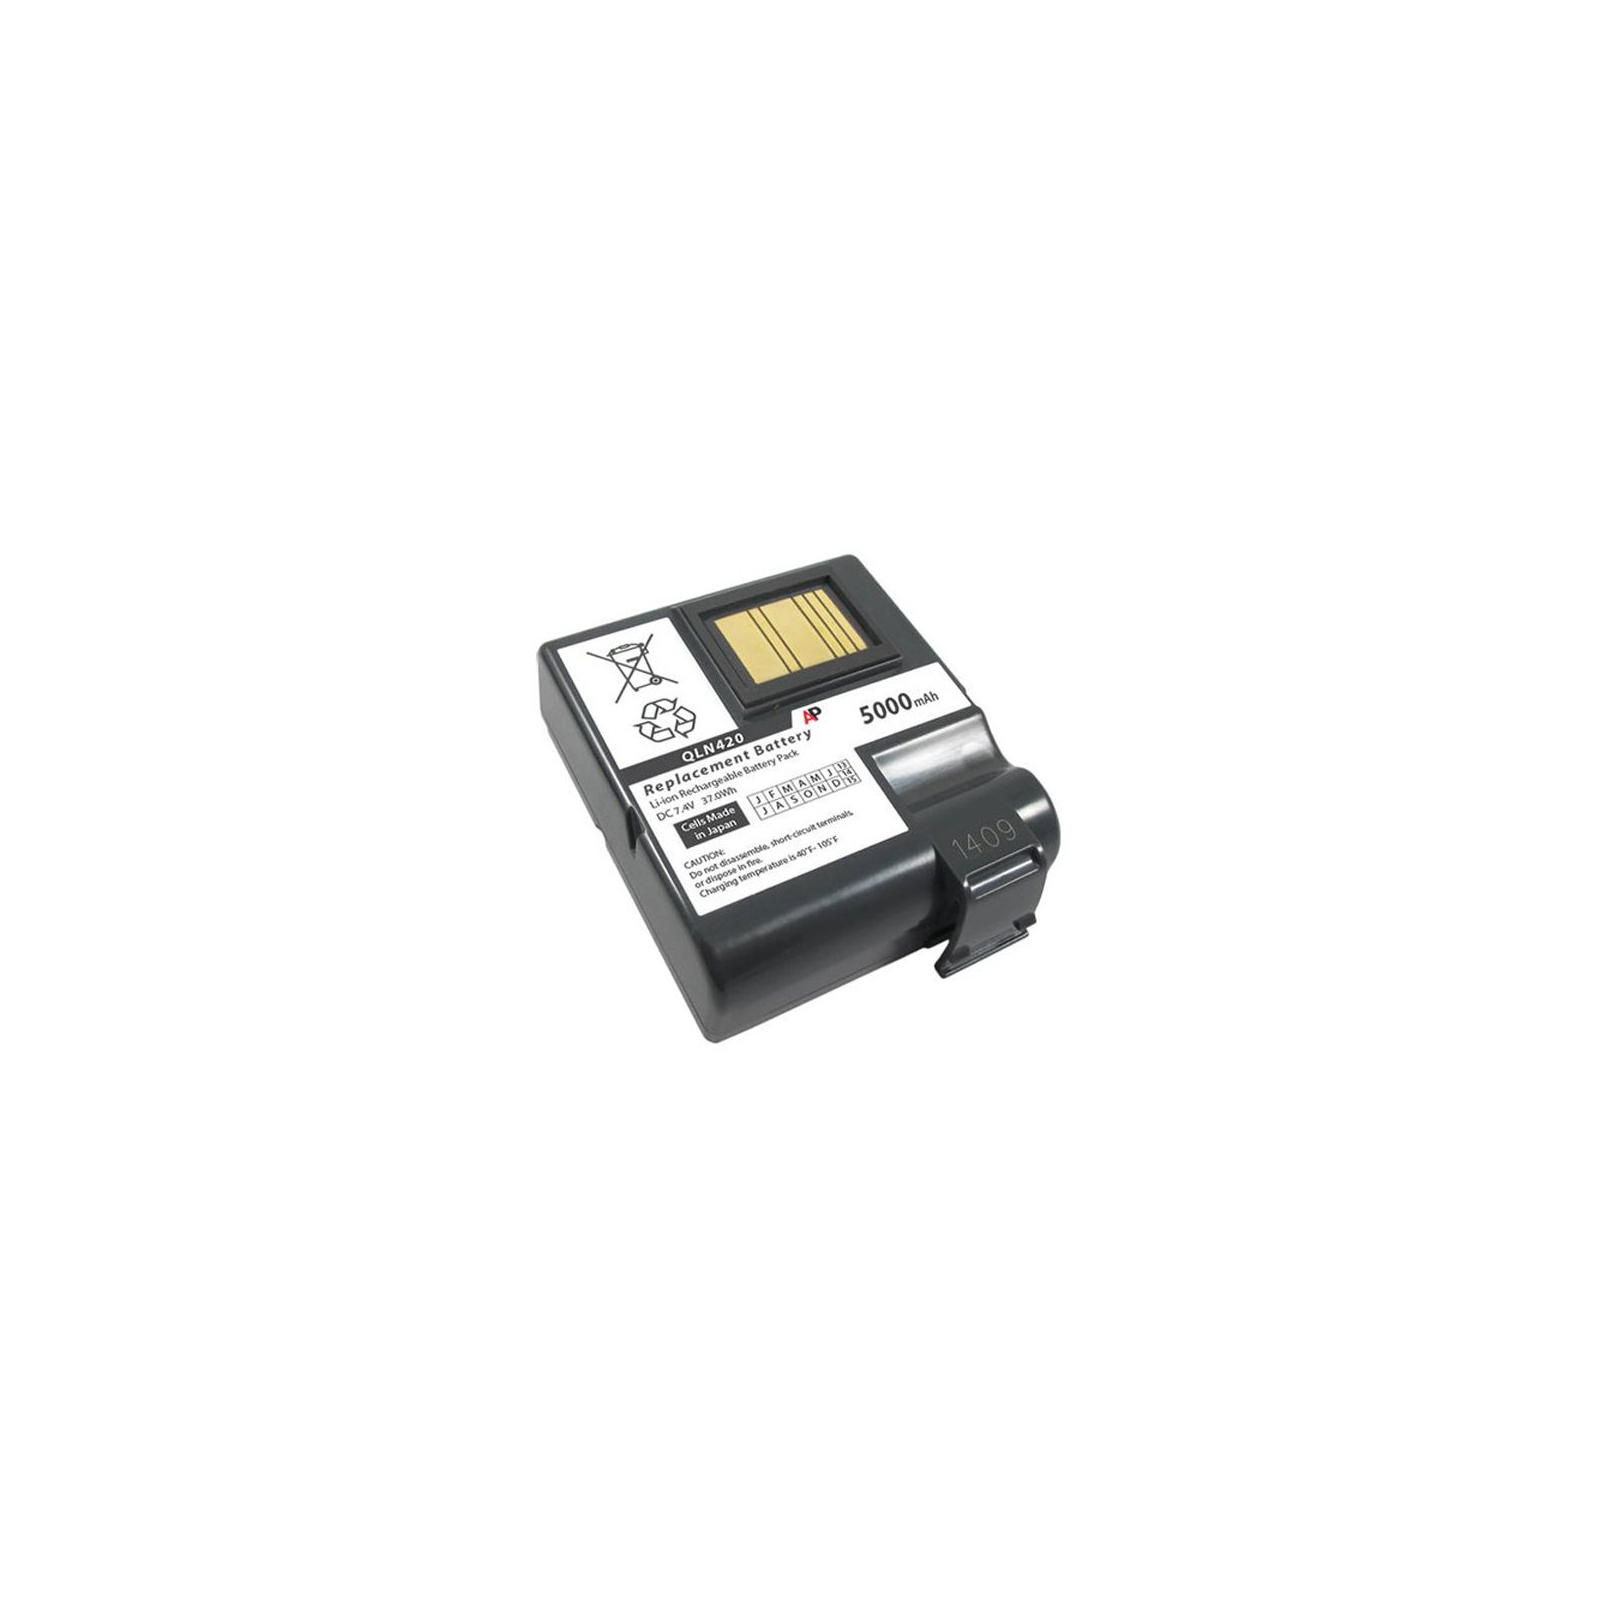 Акумуляторна батарея до мобільного принтера Zebra QLn420 (P1050667-016)